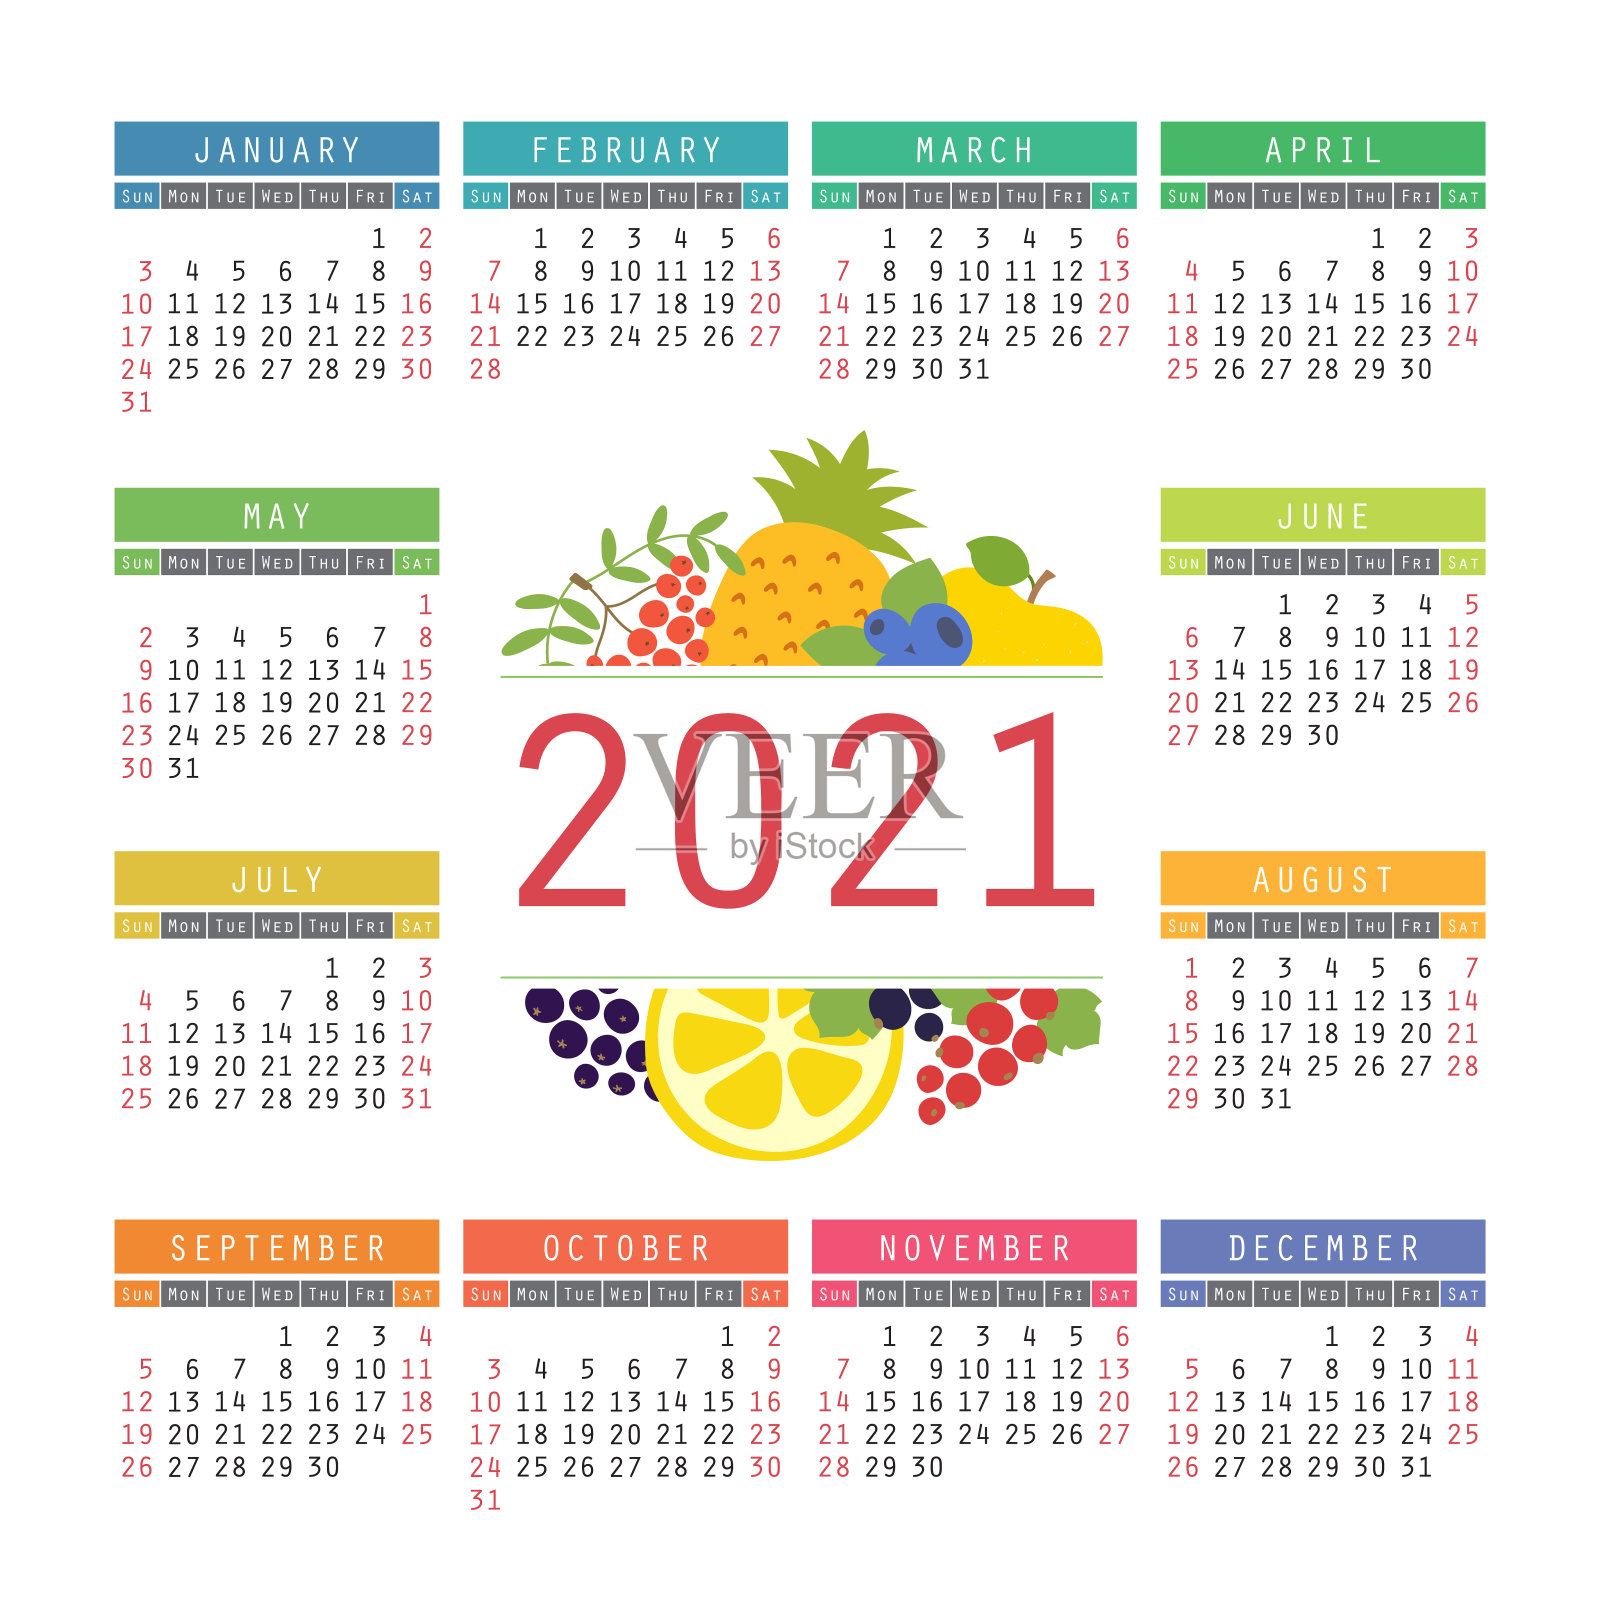 2021年日历。有机健康食品。颜色水果和浆果素描菜单。新鲜花楸，苹果，柠檬，菠萝，红加仑子，蓝莓和黑莓。丰富多彩的设计模板。手绘向量设计模板素材